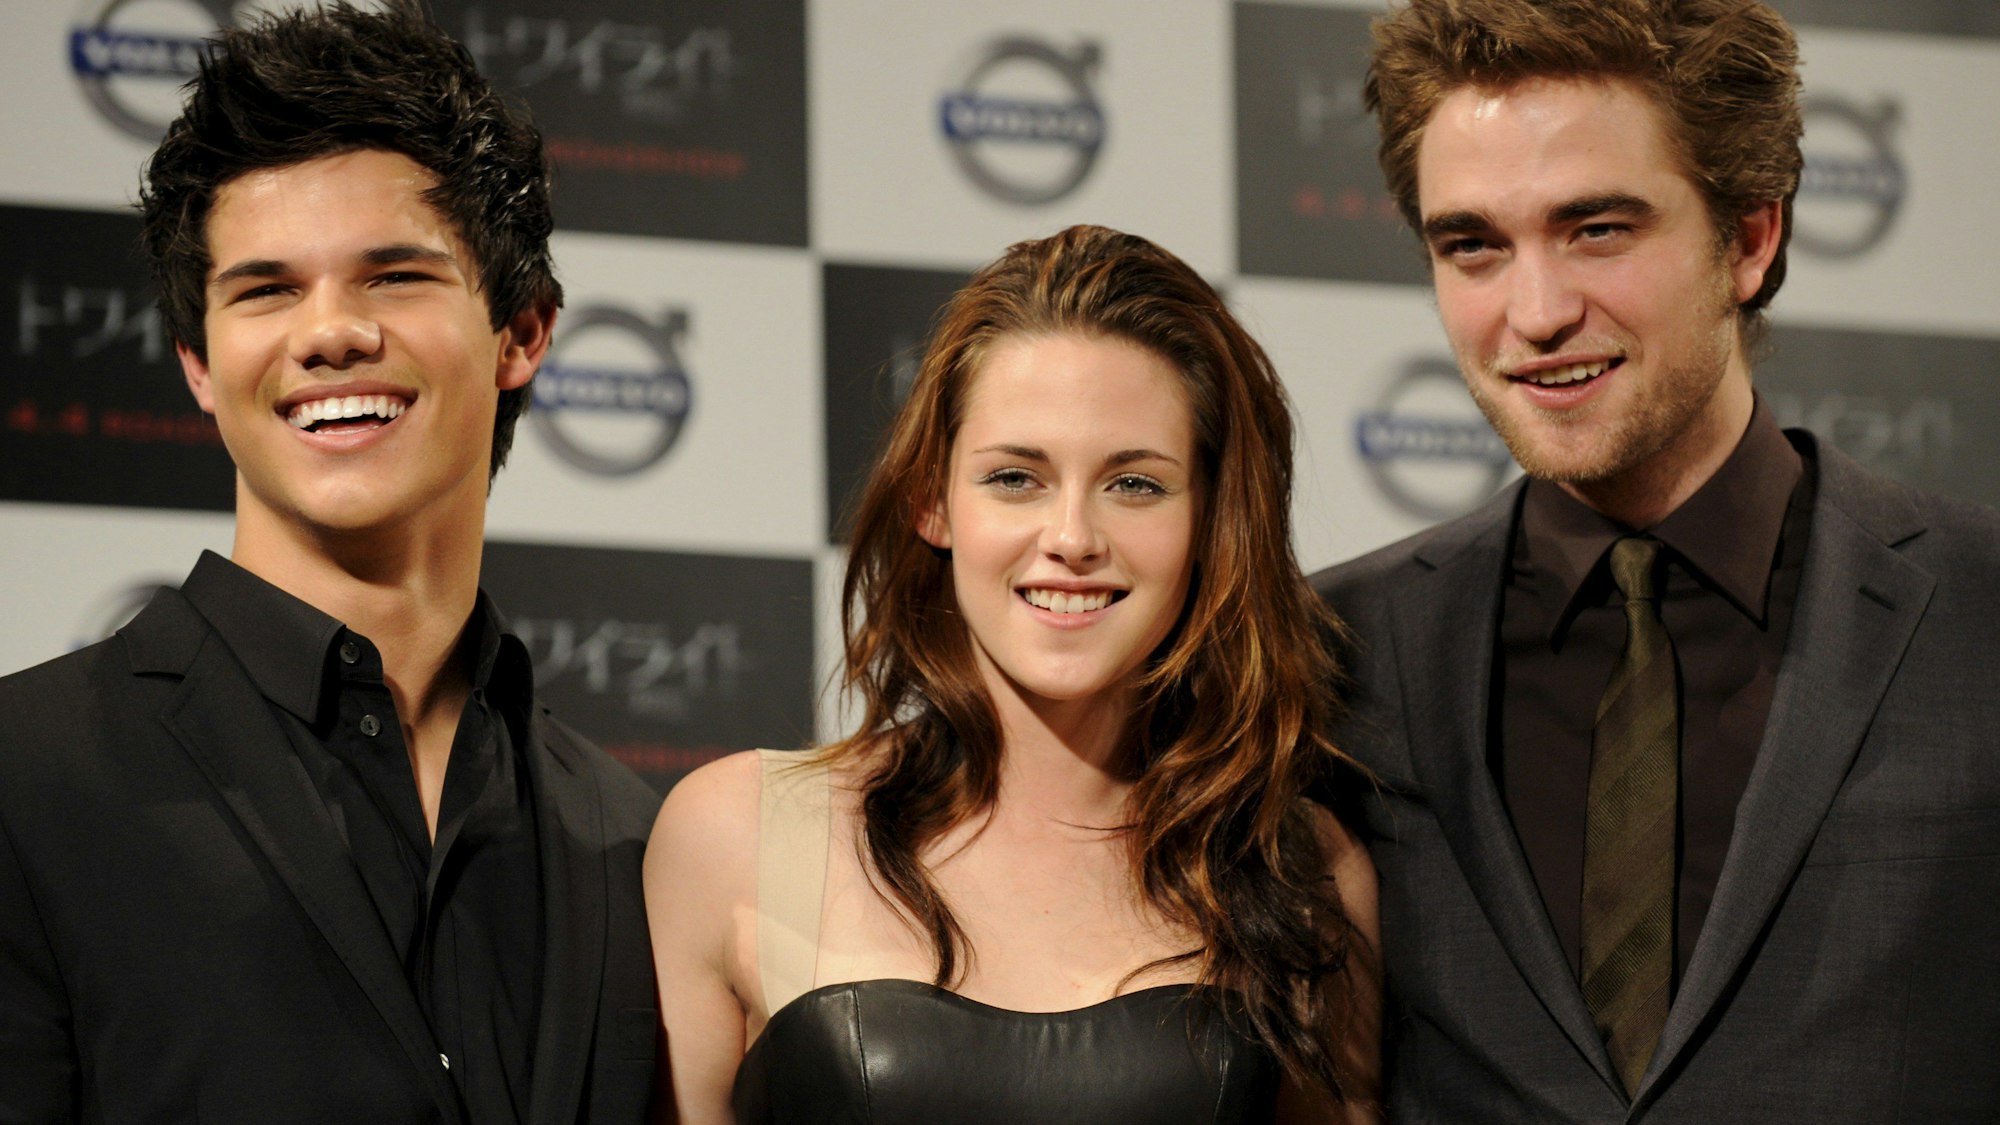 Das Bild zeigt den britischen Schauspieler Robert Pattinson (r) und seine US-amerikanischen Kollegen Kristen Stewart (M) und Taylor Lautner (l).